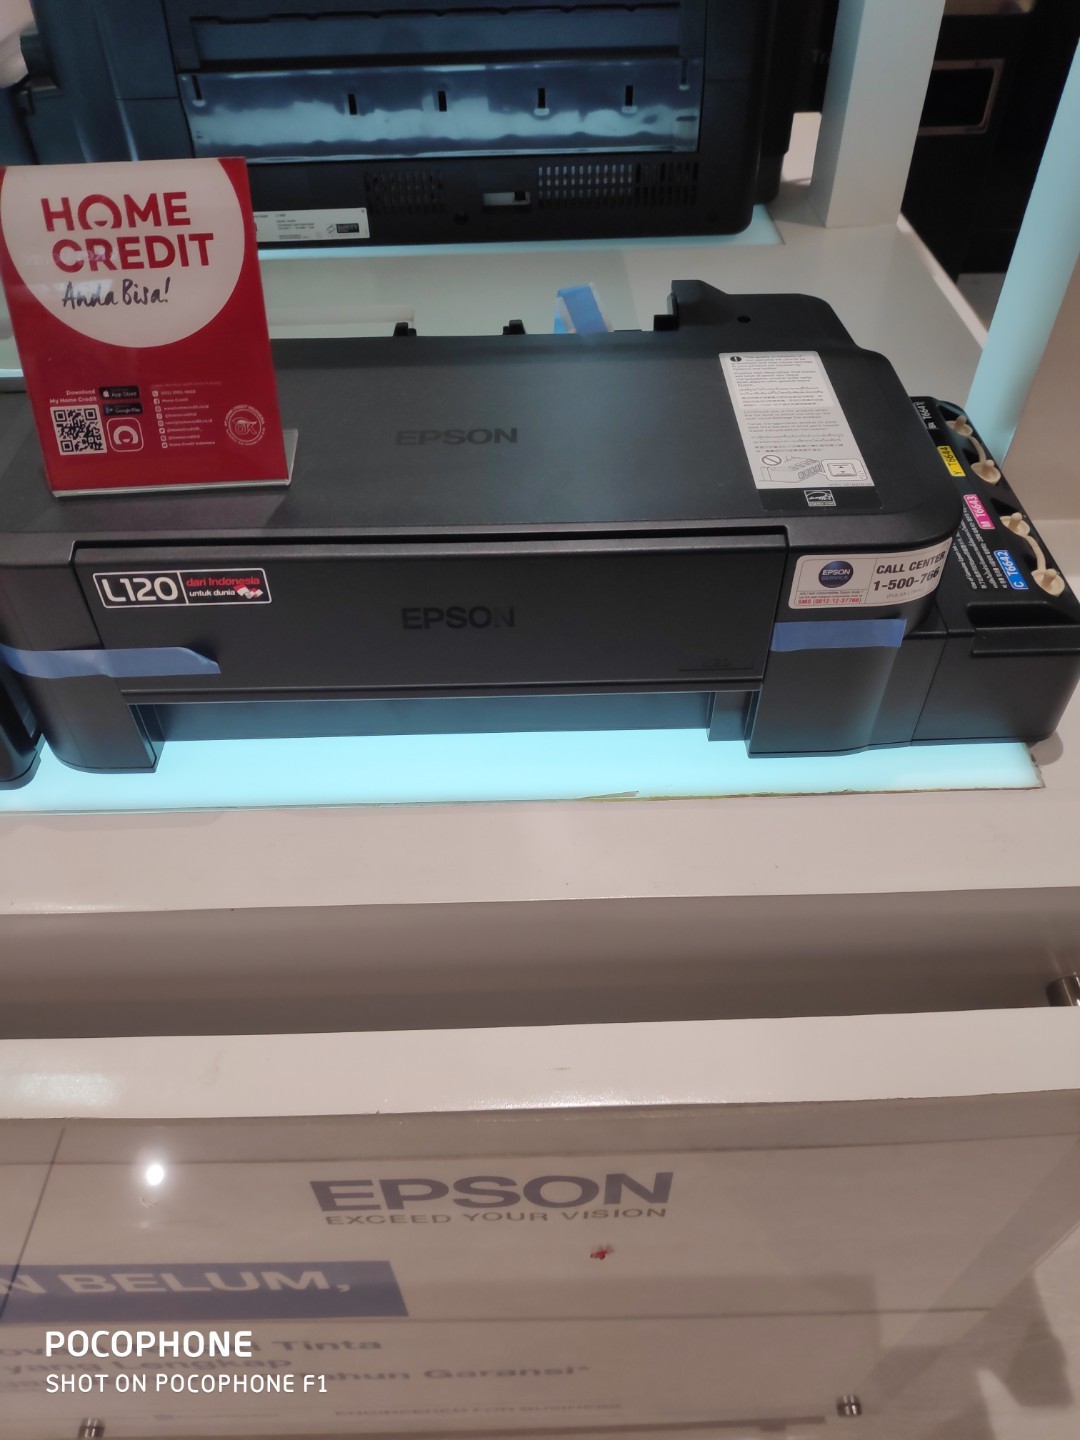 Printer Epson L120 Elektronik Bagian Komputer And Aksesoris Di Carousell 4156